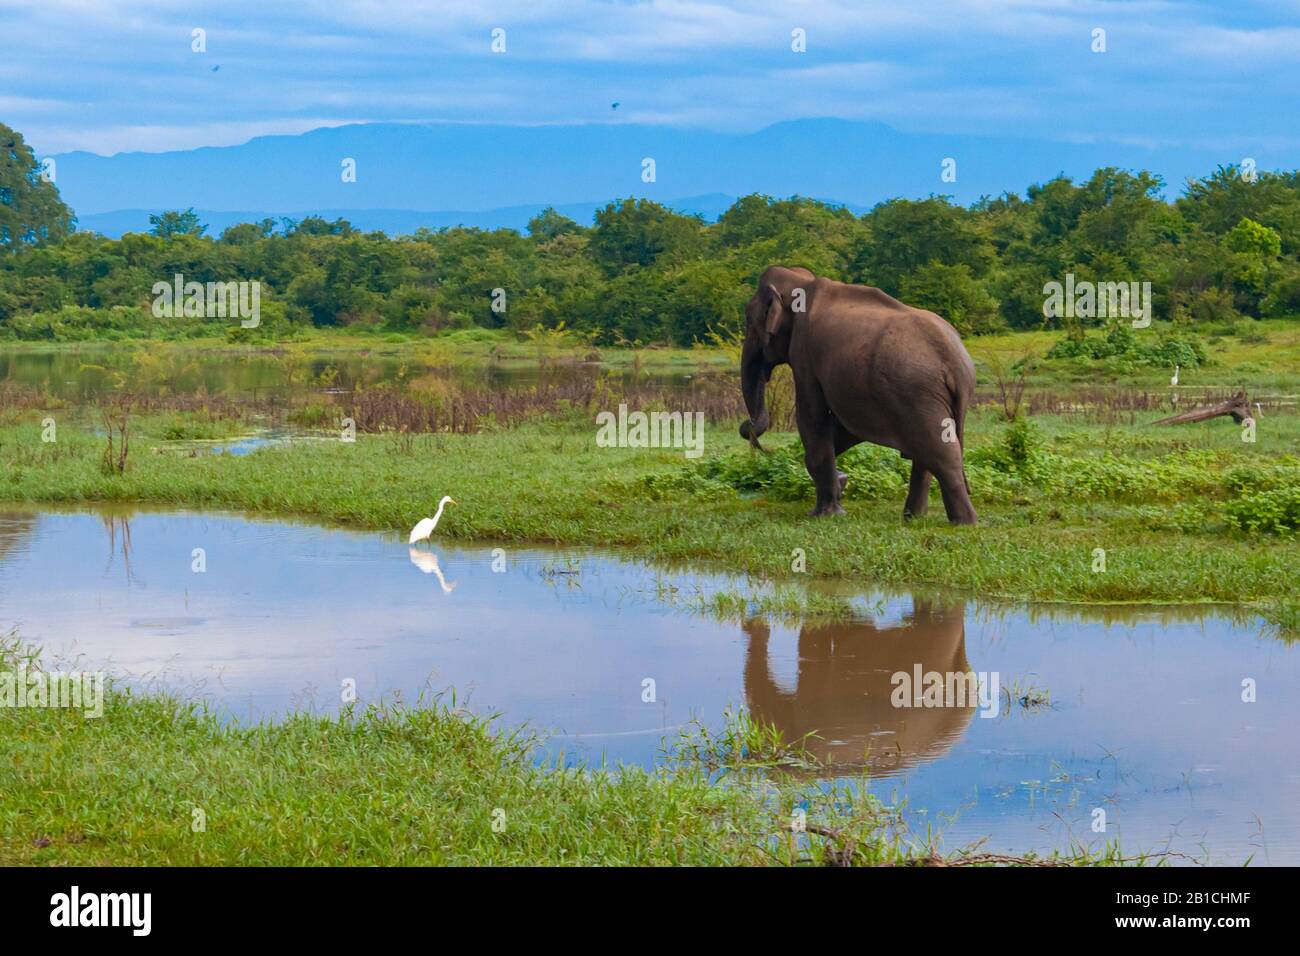 piccolo elefante e airone. Il bambino elefante sta camminando, l'airone sta in piedi nell'acqua. Cielo blu molto bello Foto Stock